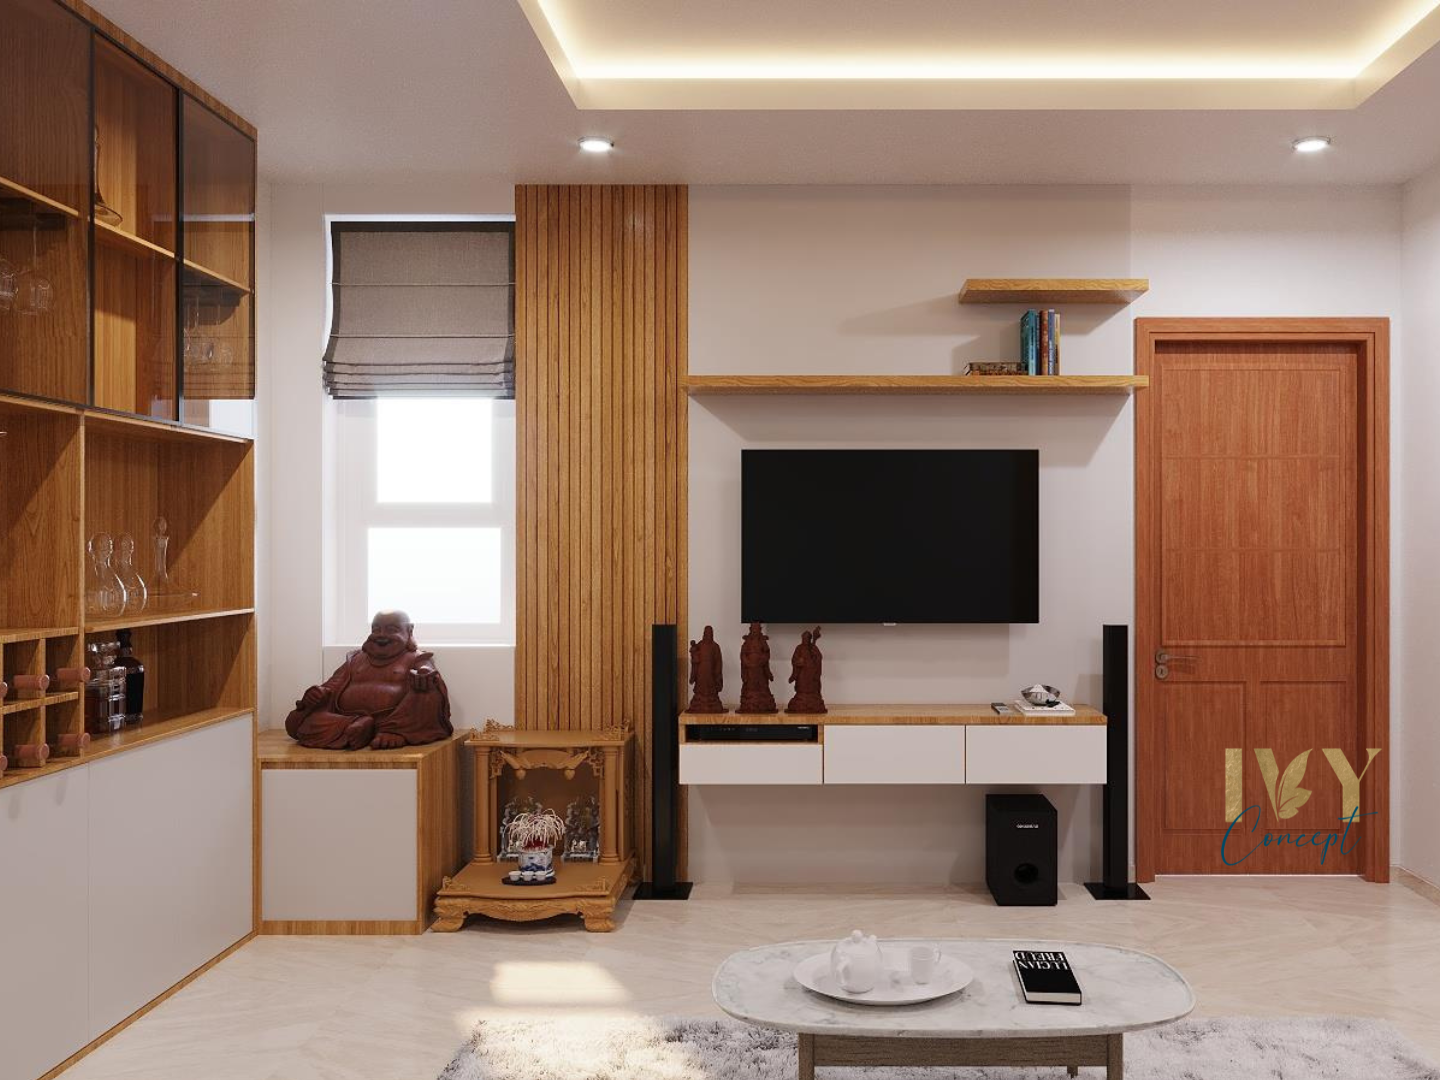 Phòng khách, phong cách Bắc Âu Scandinavian, thiết kế concept nội thất, căn hộ The CBD Premium Home